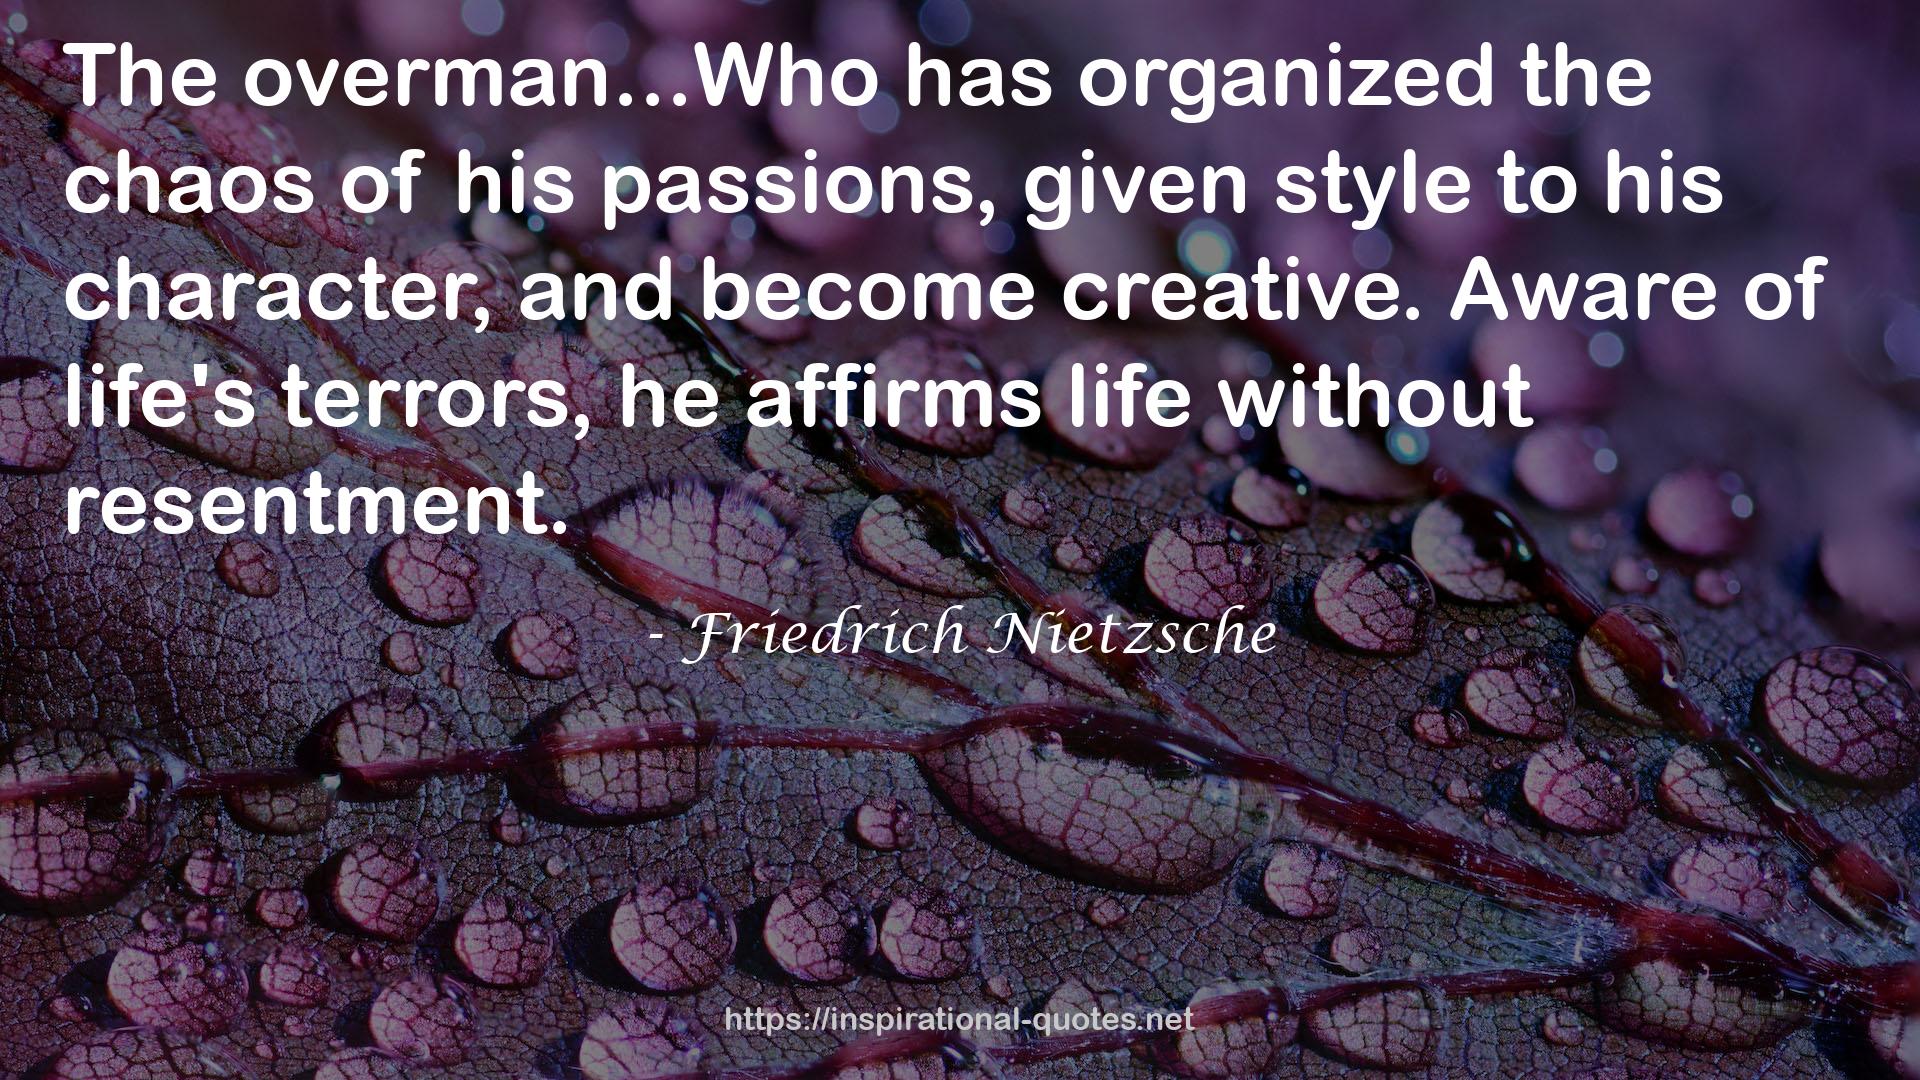 Friedrich Nietzsche QUOTES